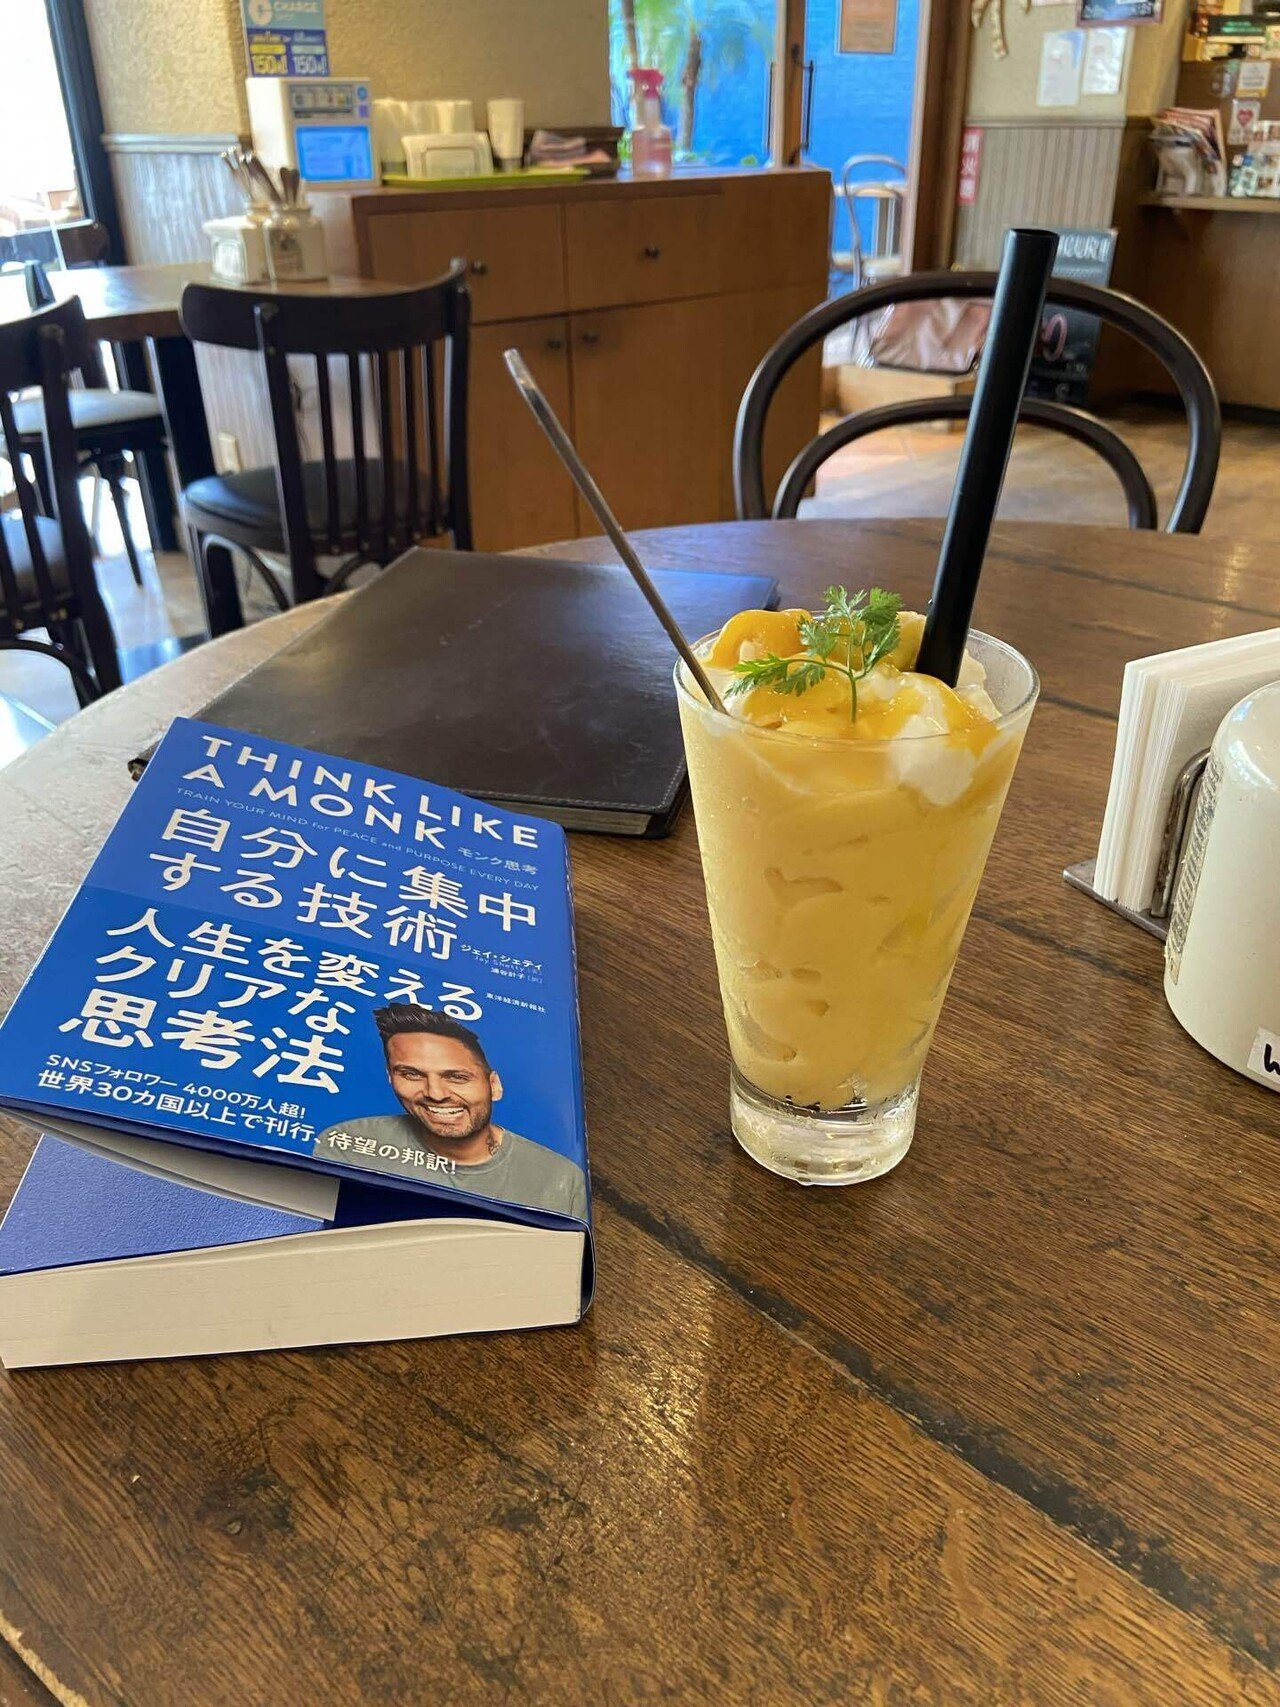 カフェでマンゴージュースと読書という オシャレolさんぽい贅沢な時間笑 東 龍青 アズマ リュウセイ Note